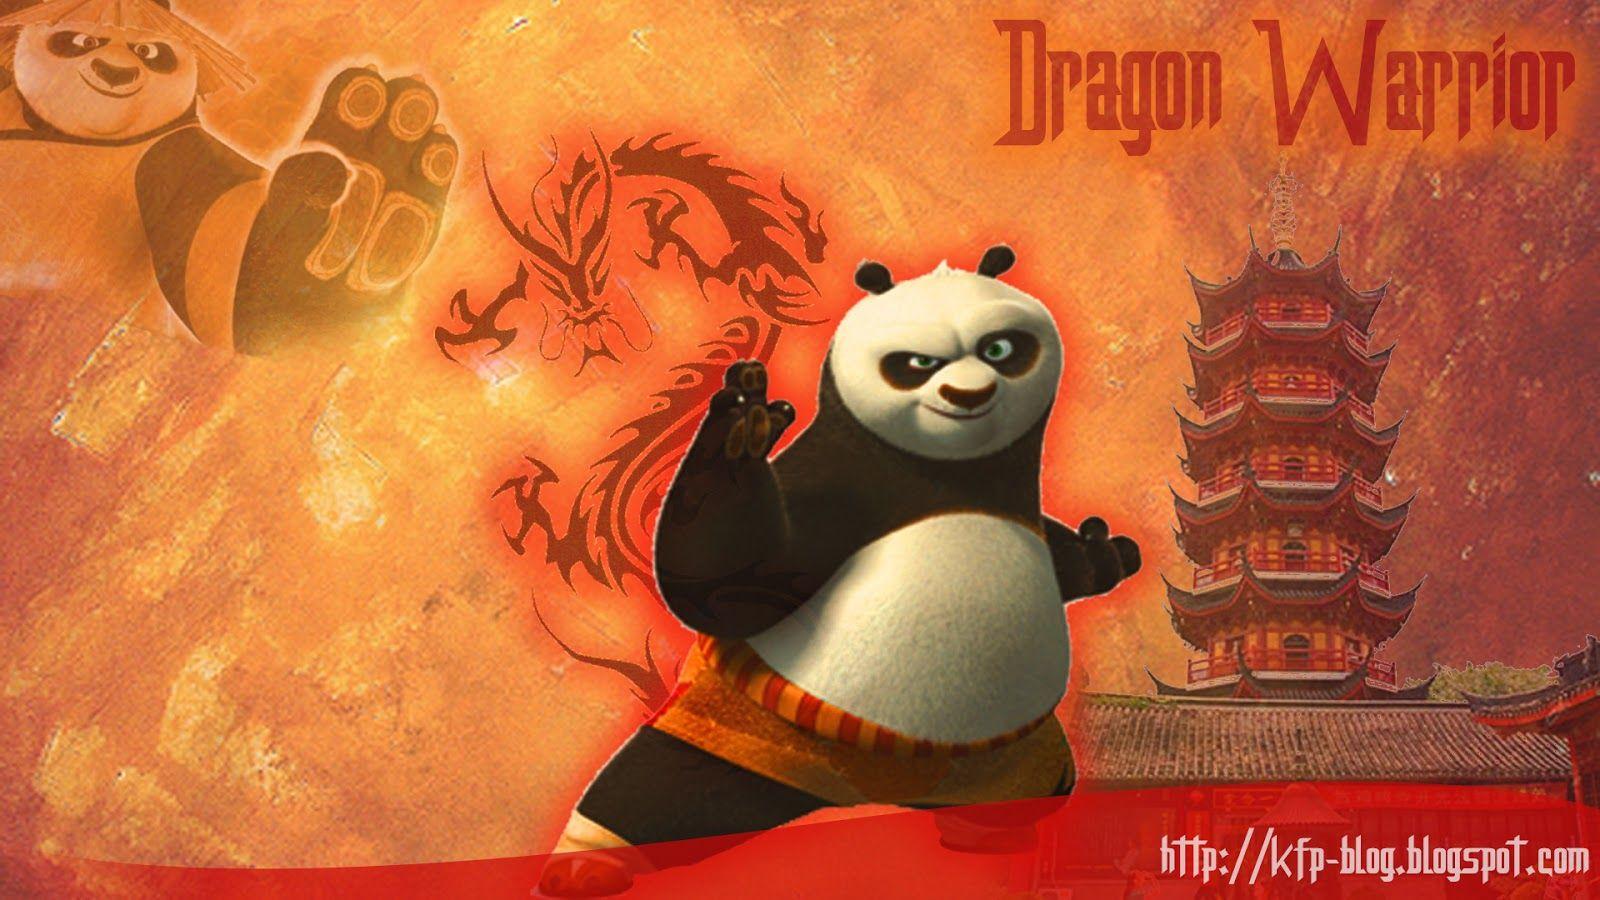 Kung Fu Panda Series HD Wallpaper, Reviews and News: Kung Fu Panda